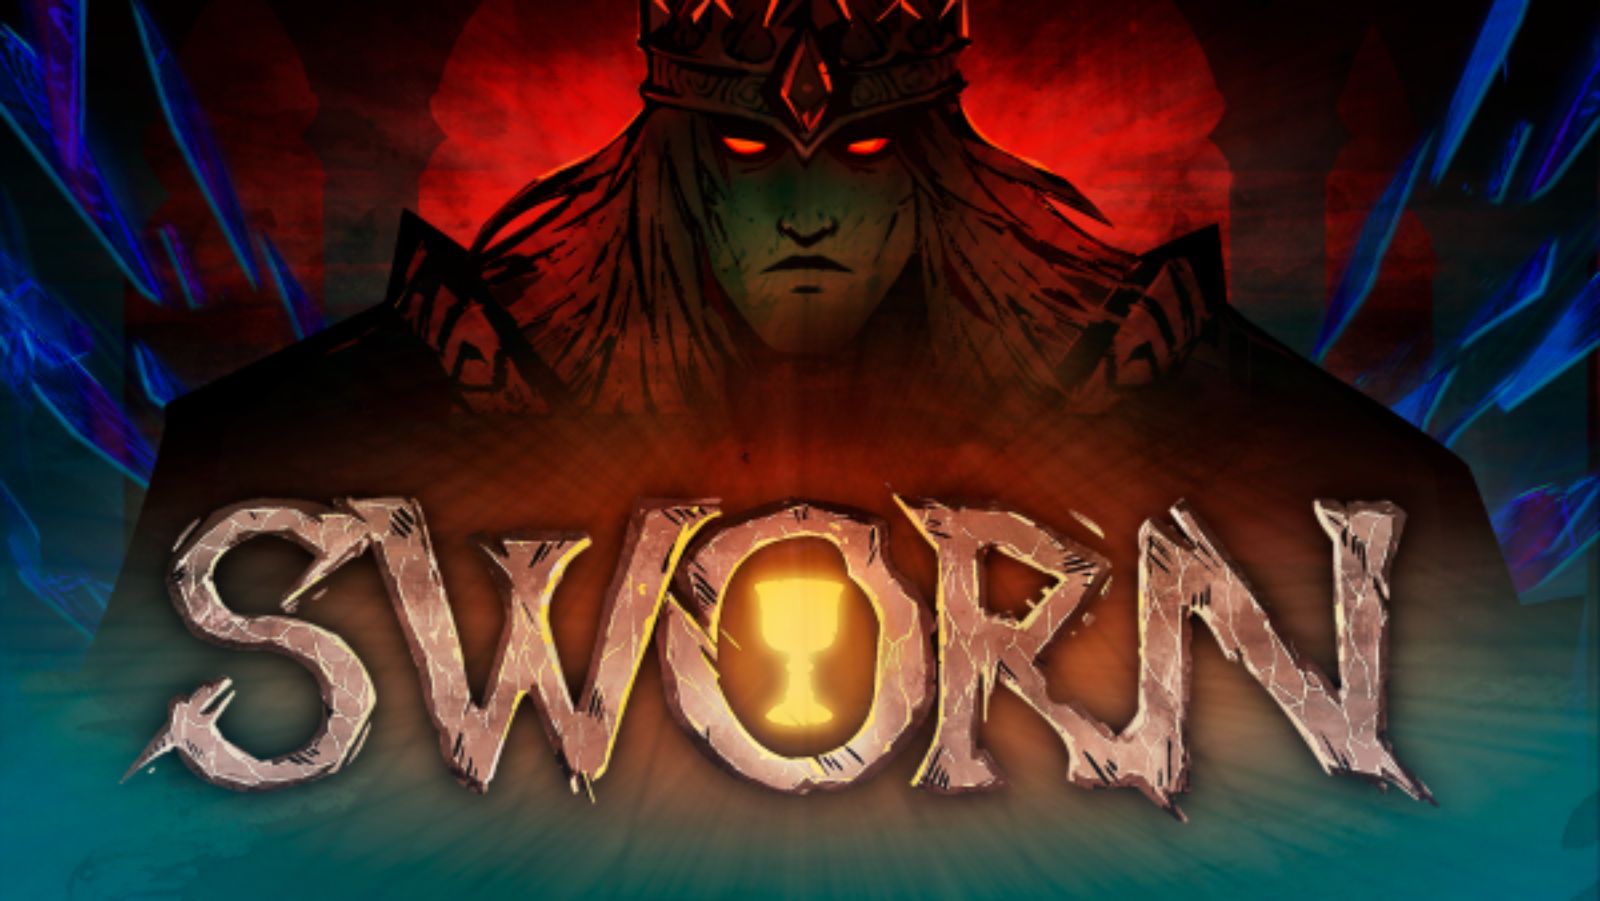 Sworn, juego cooperativo roguelite publicado por Team17.